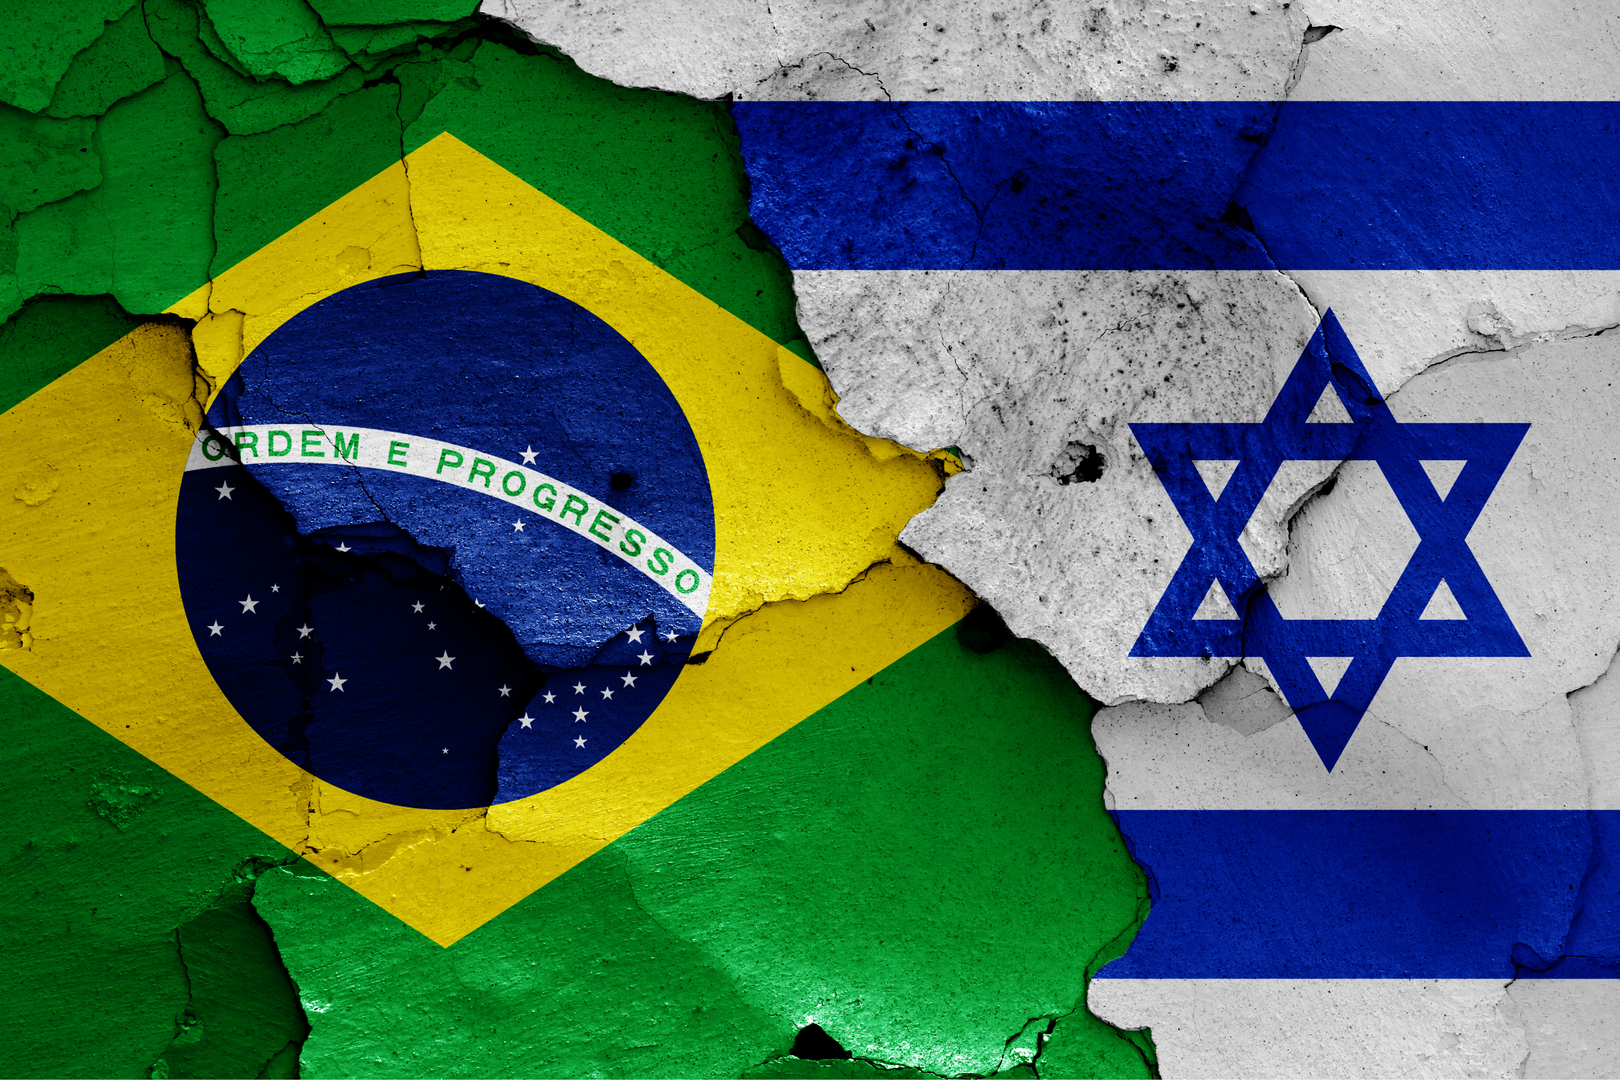 وزير الخارجية البرازيلي يتهم نظيره الإسرائيلي بـ"الكذب"